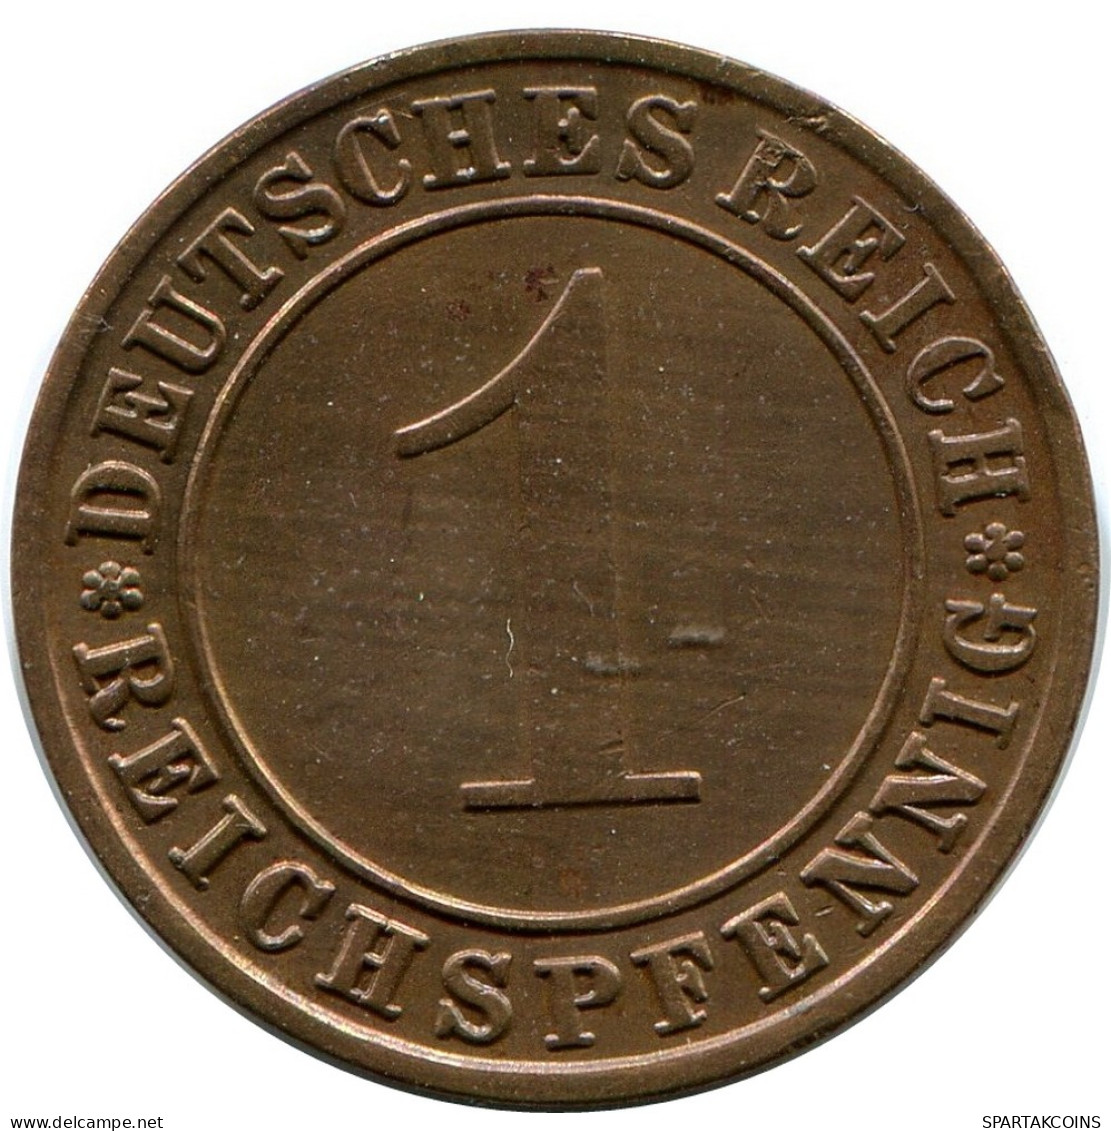 1 REICHSPFENNIG 1931 F DEUTSCHLAND Münze GERMANY #DB791.D - 1 Rentenpfennig & 1 Reichspfennig